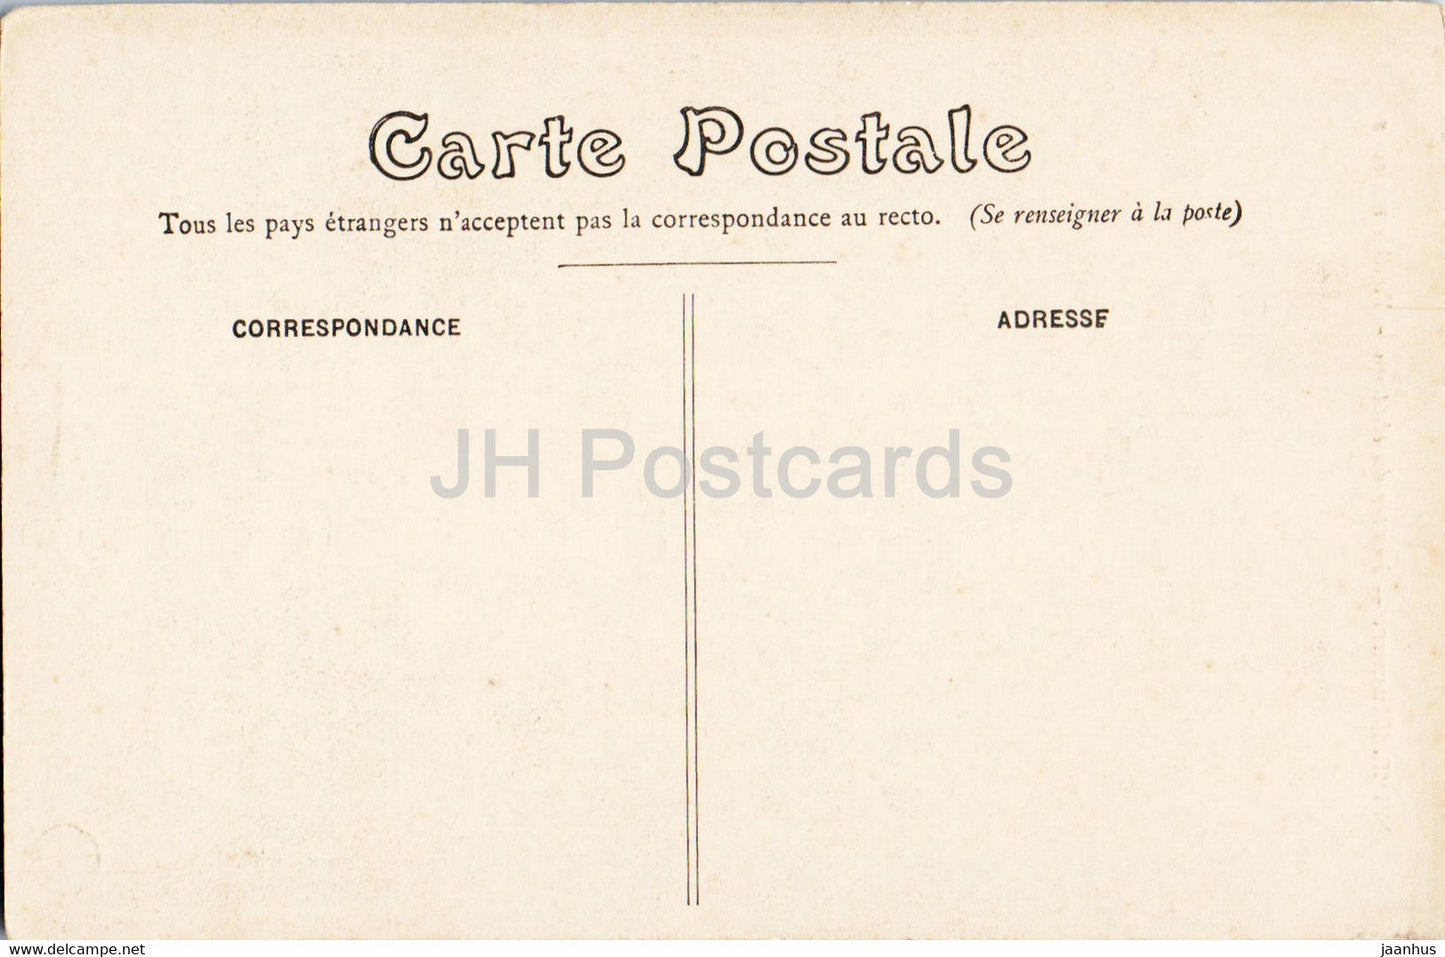 Saumur - Montee du chateau - Vieilles maisons - 23 - old postcard - France - unused